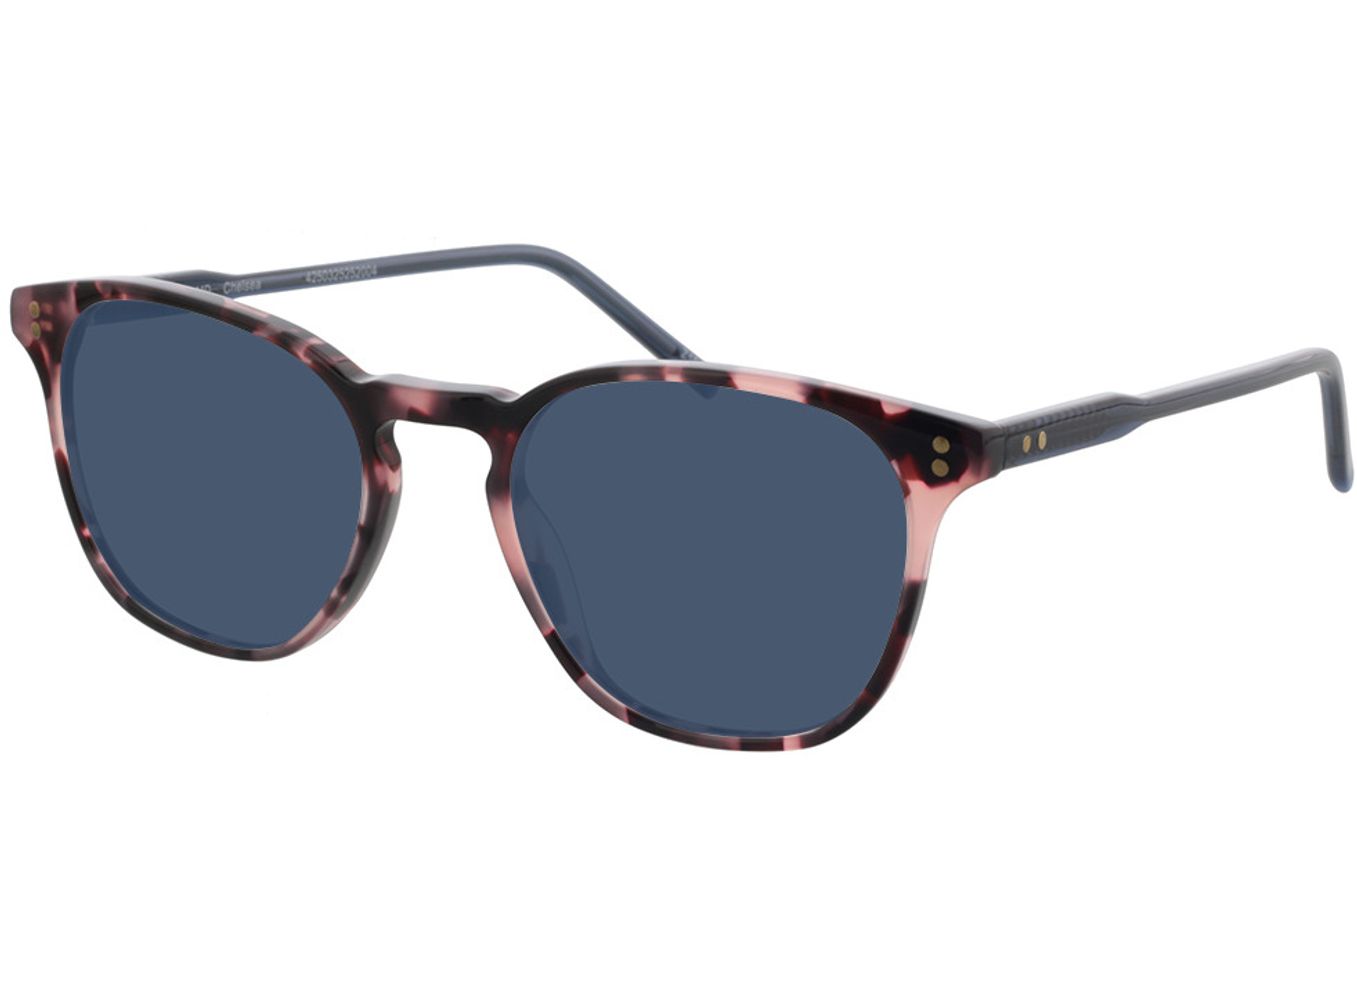 Chelsea - pink meliert Sonnenbrille ohne Sehstärke, Vollrand, Eckig von Brille24 Collection